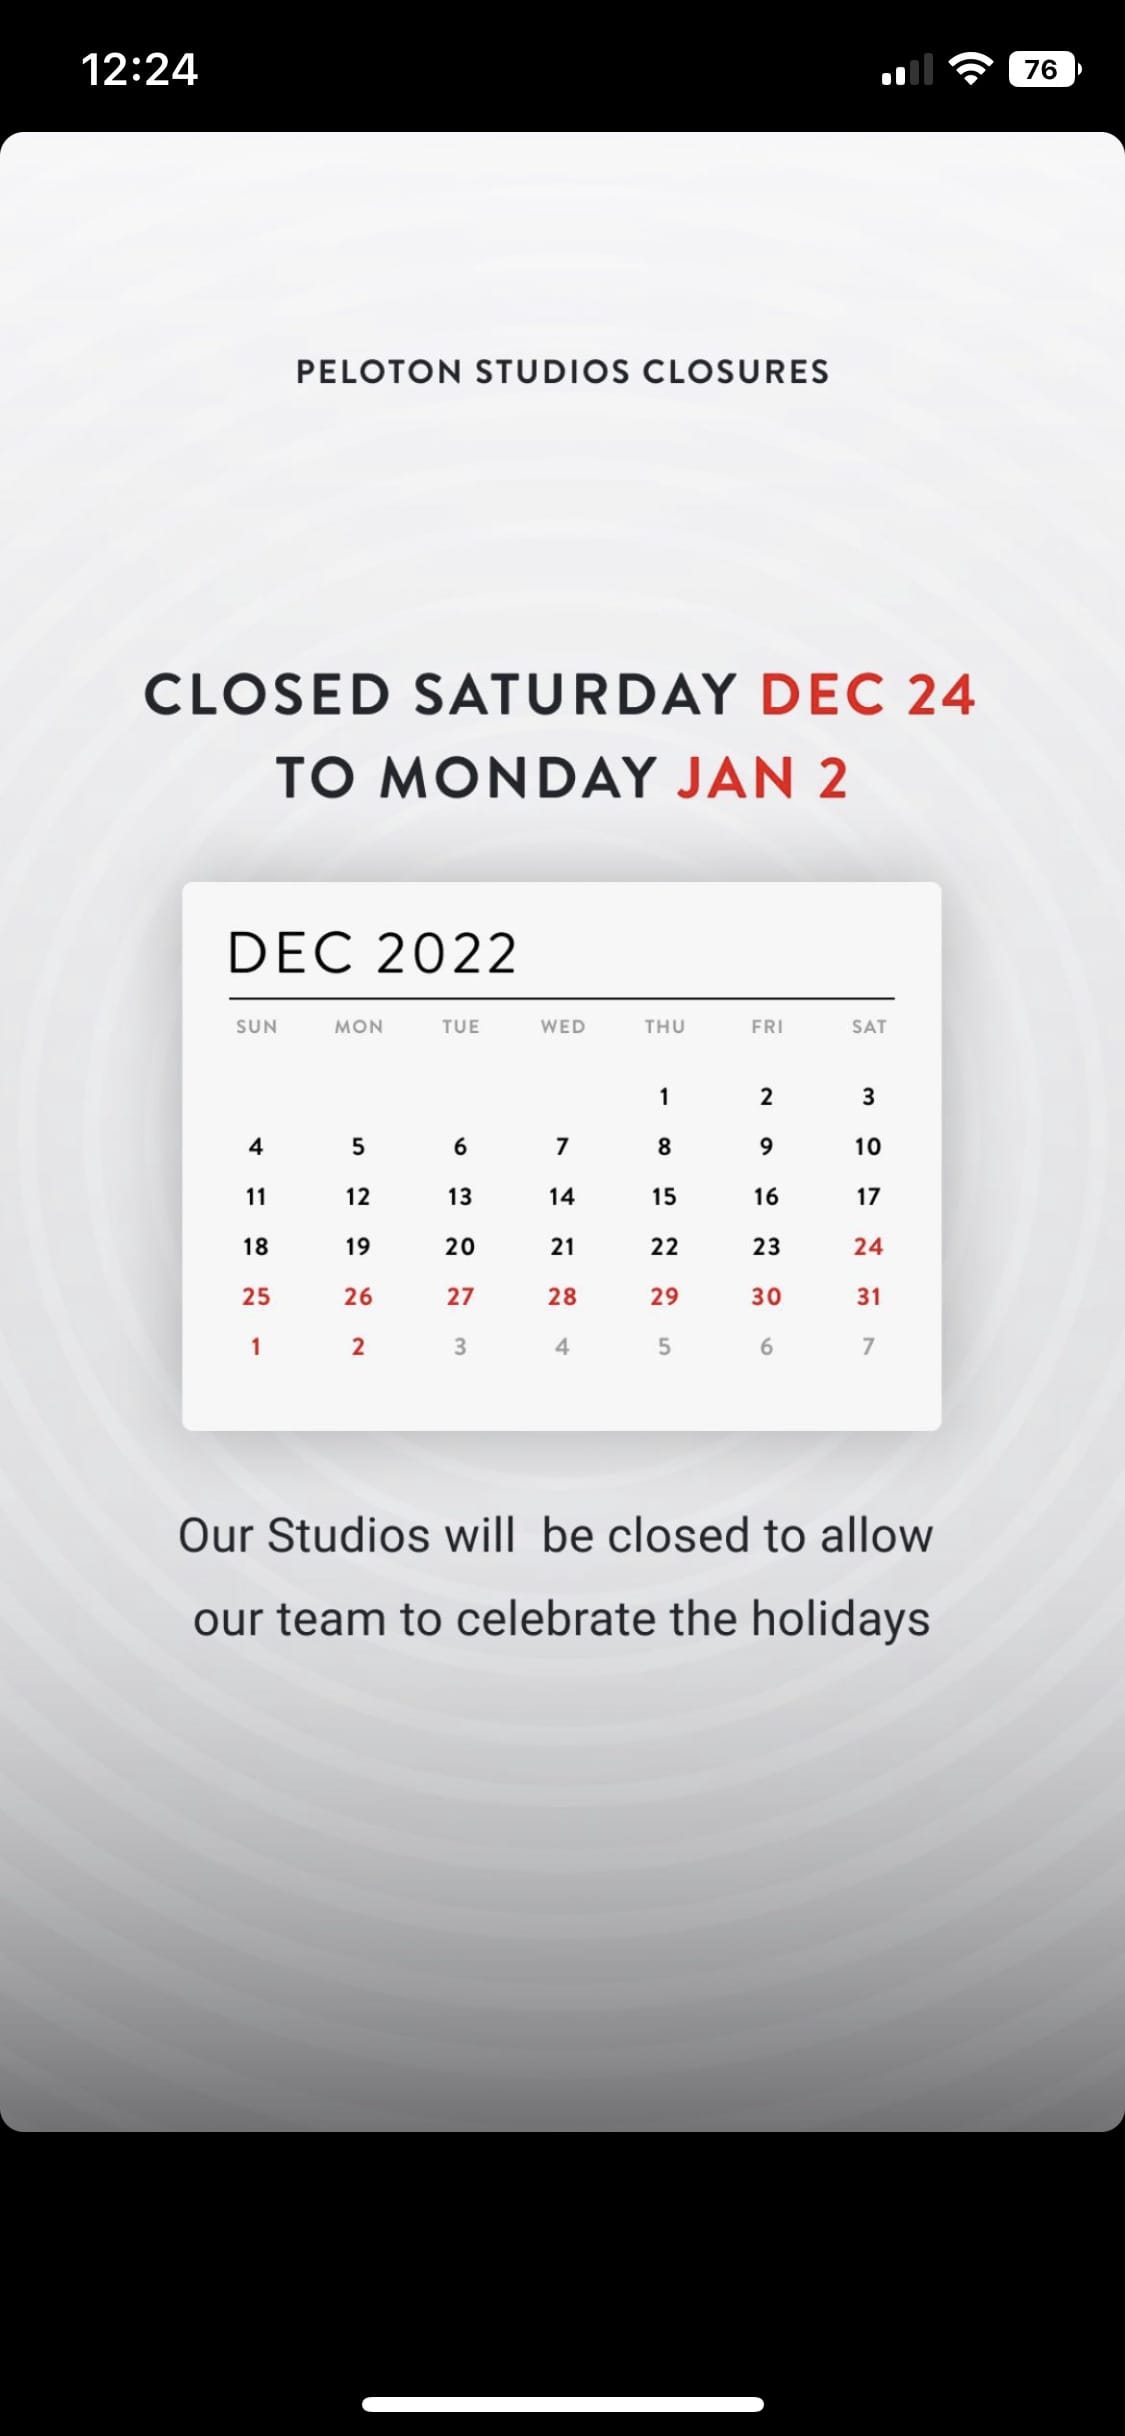 Peloton Instagram Story regarding studio closure.